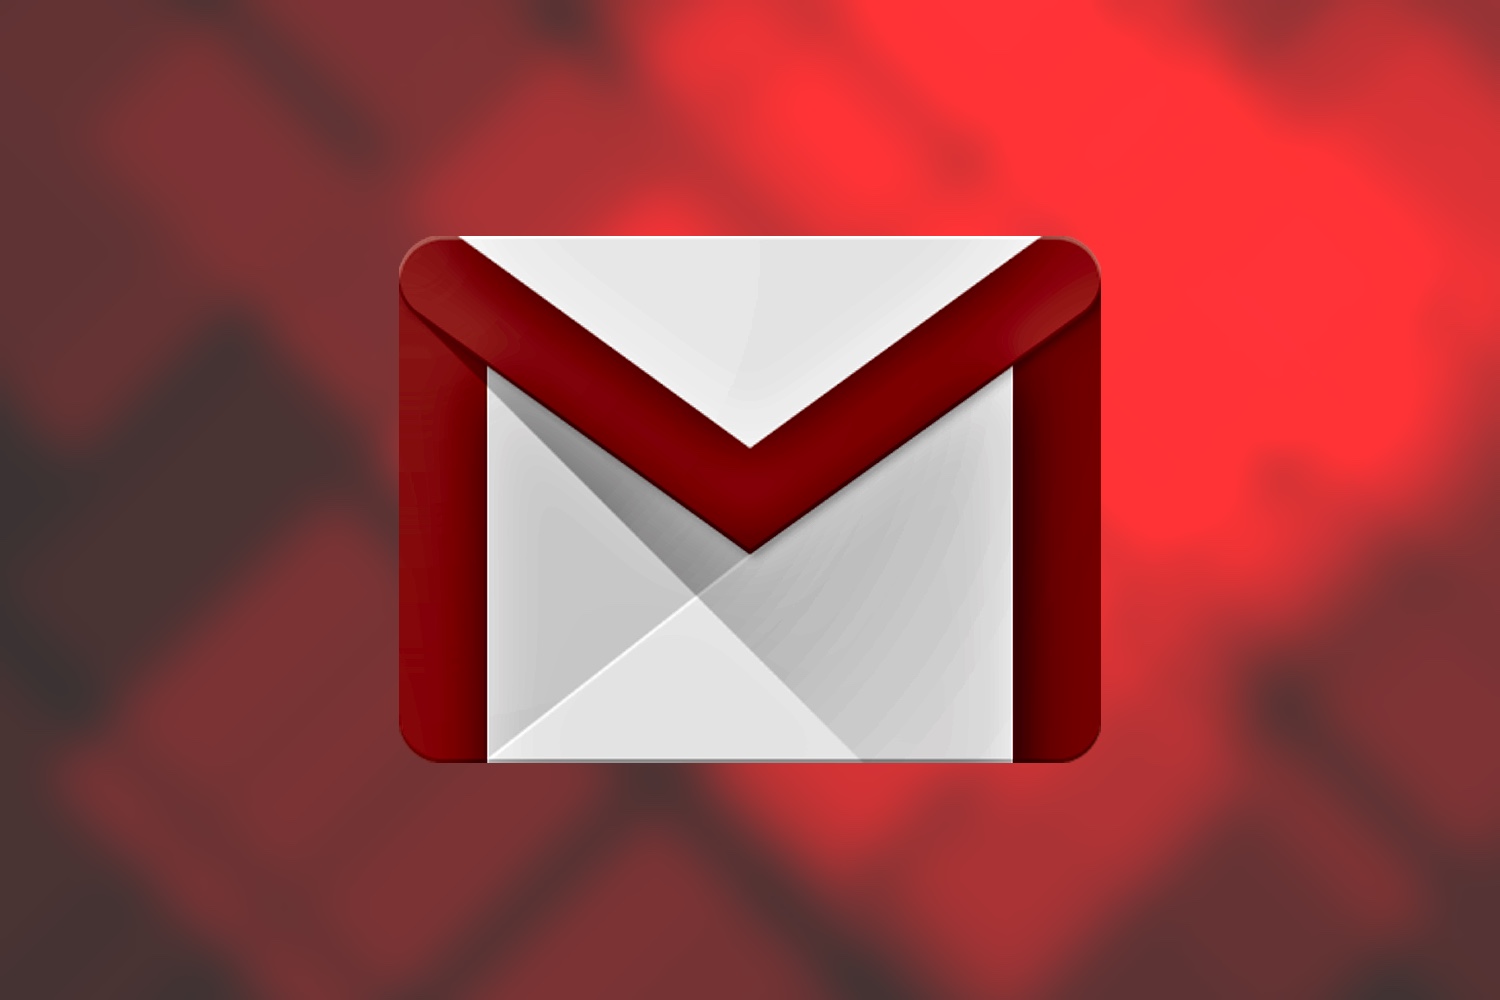 Ver correo archivado gmail